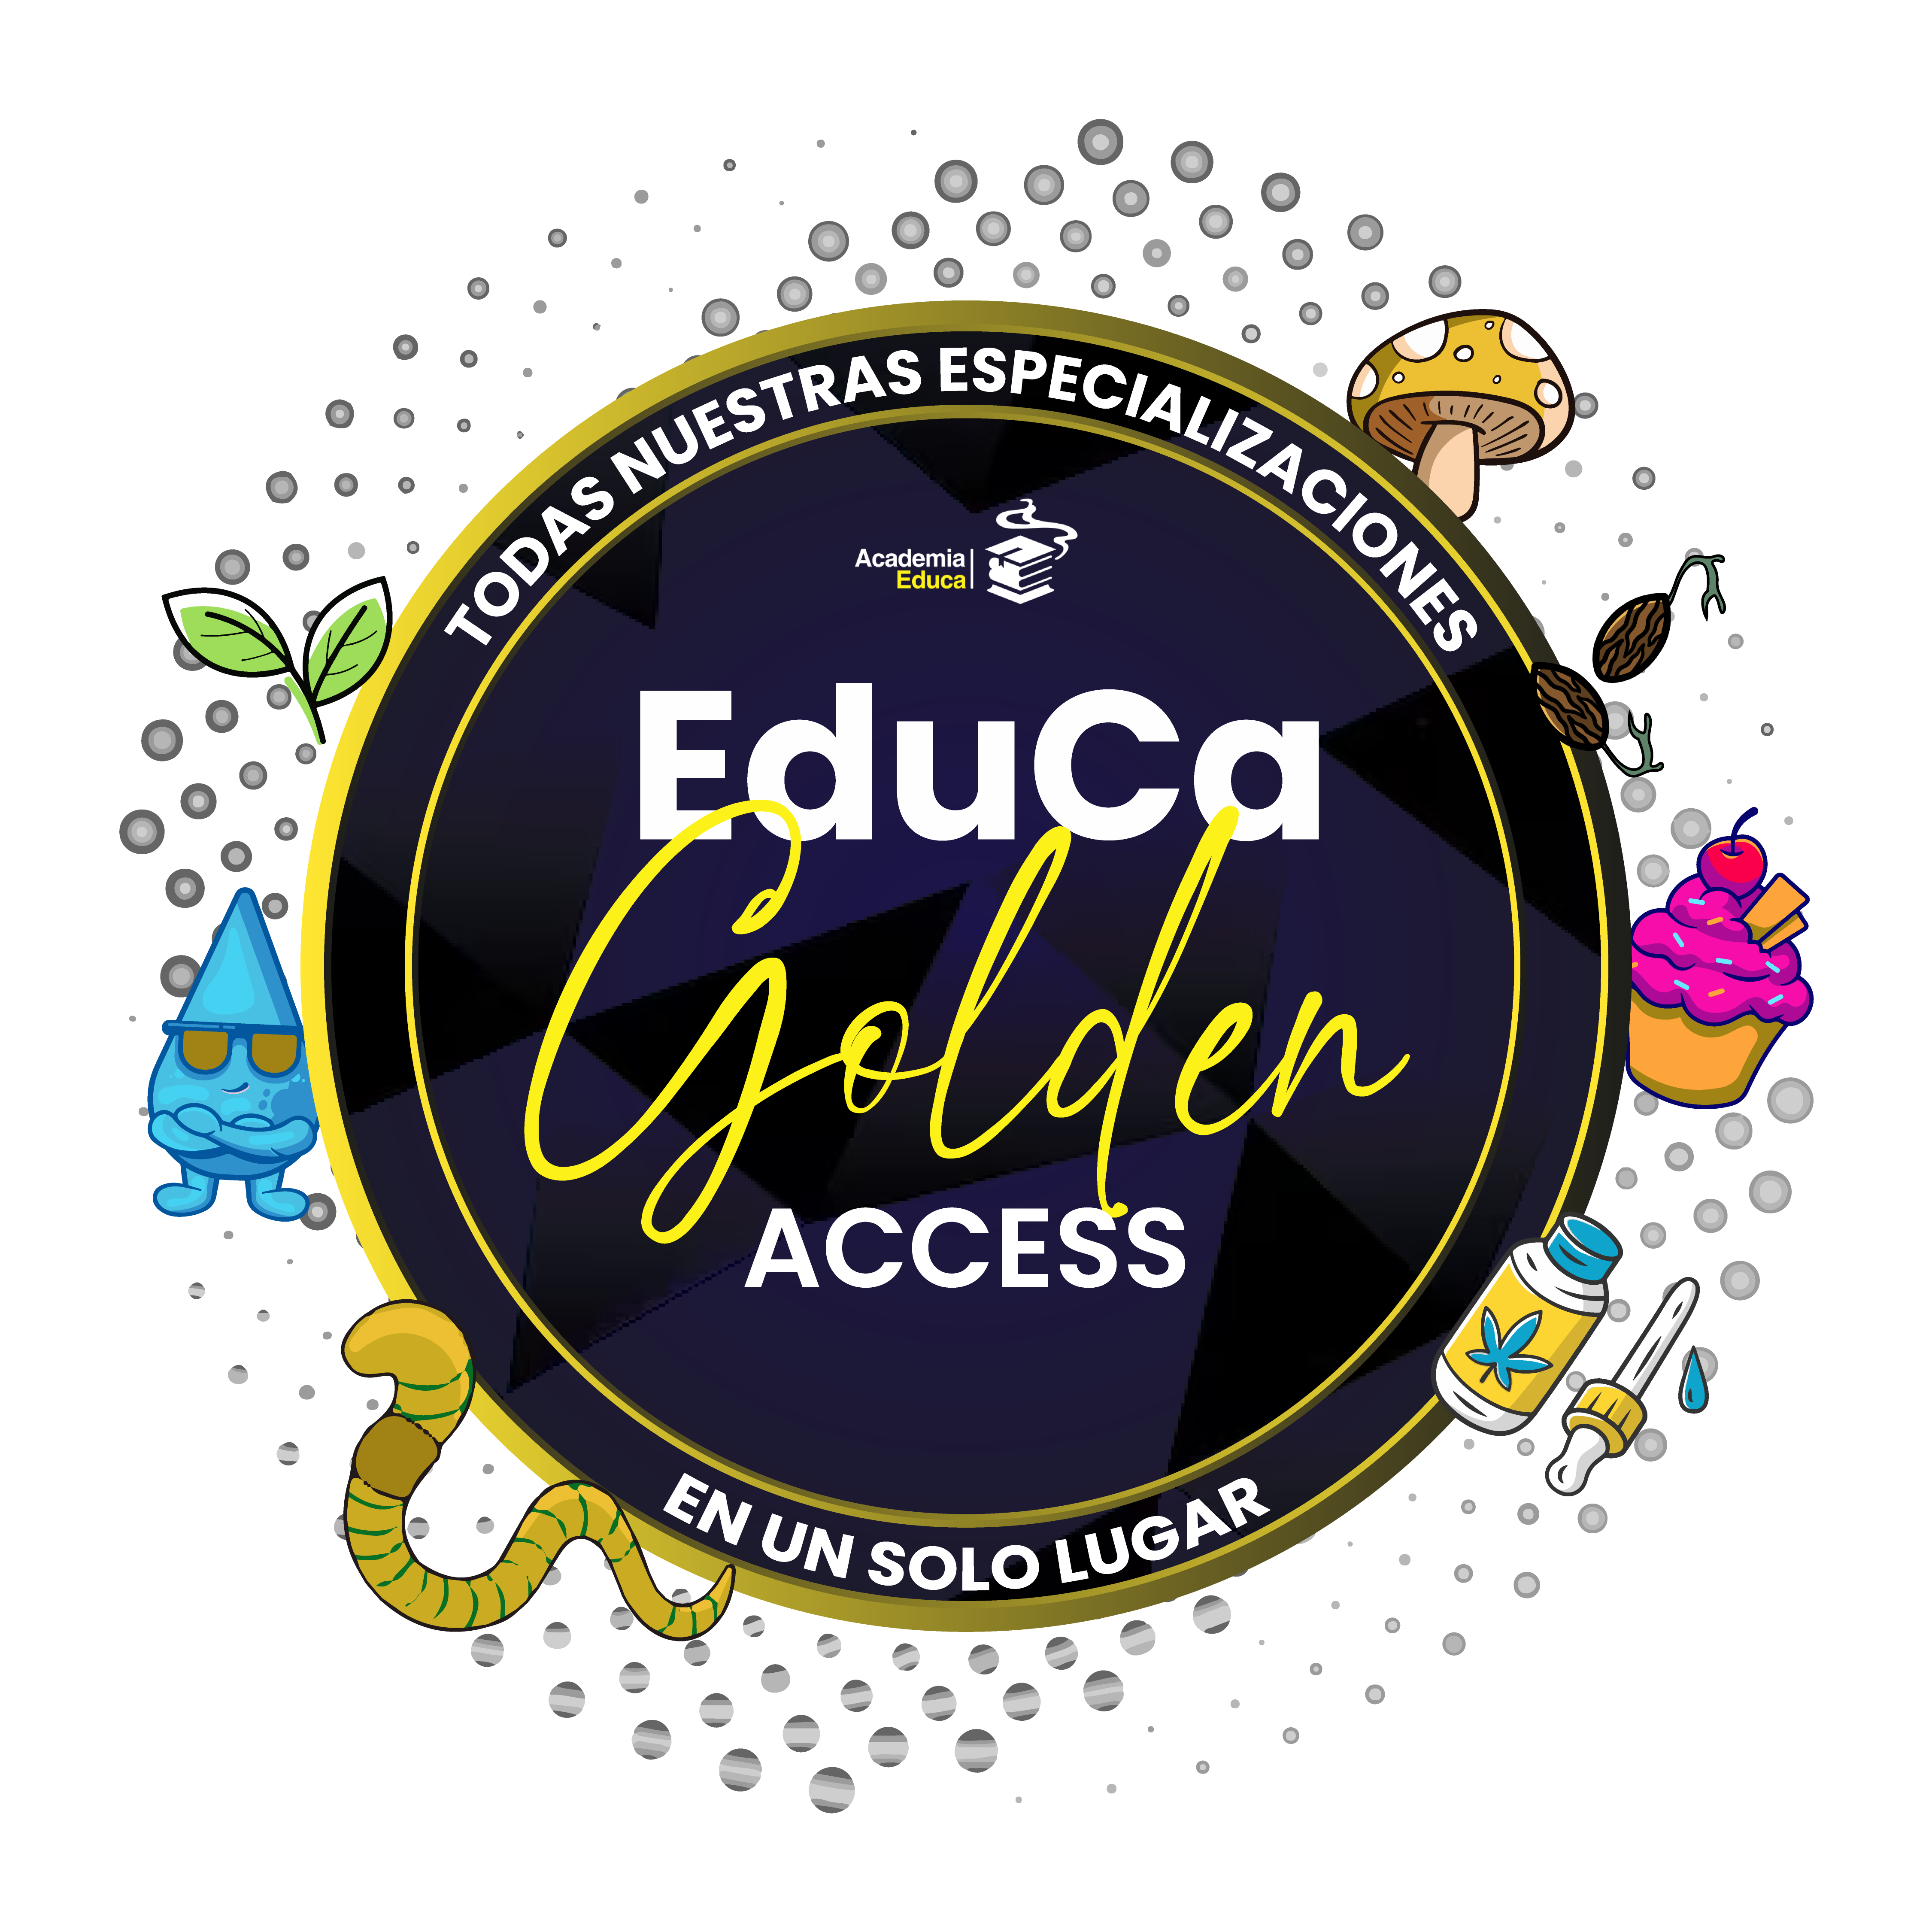 Golden Access en VIVO: TODAS nuestras especializaciones en 1 solo lugar! Accedé a clases via ZOOM por 1 año!